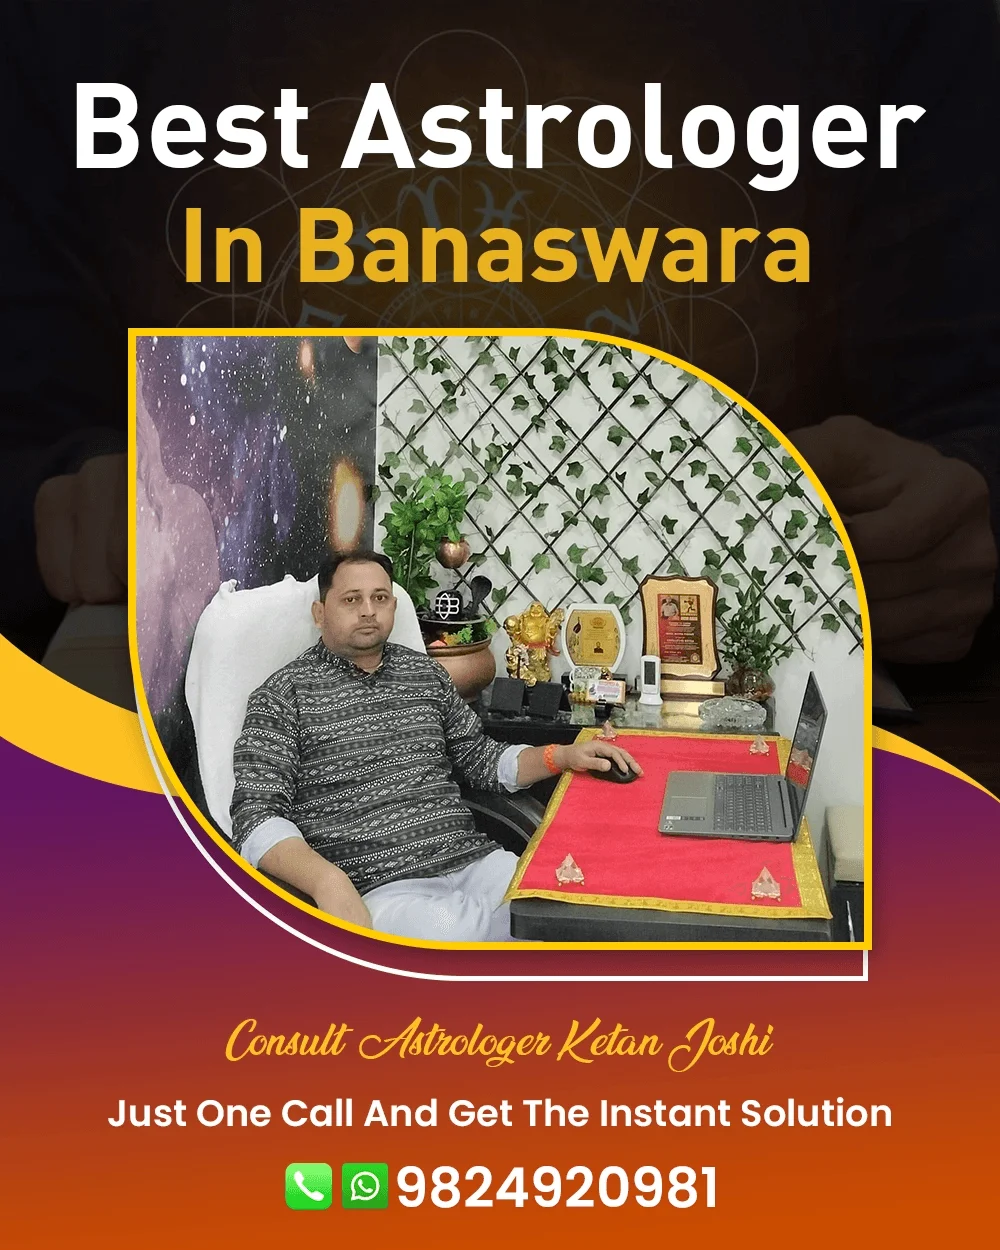 Best Astrologer In Banaswara